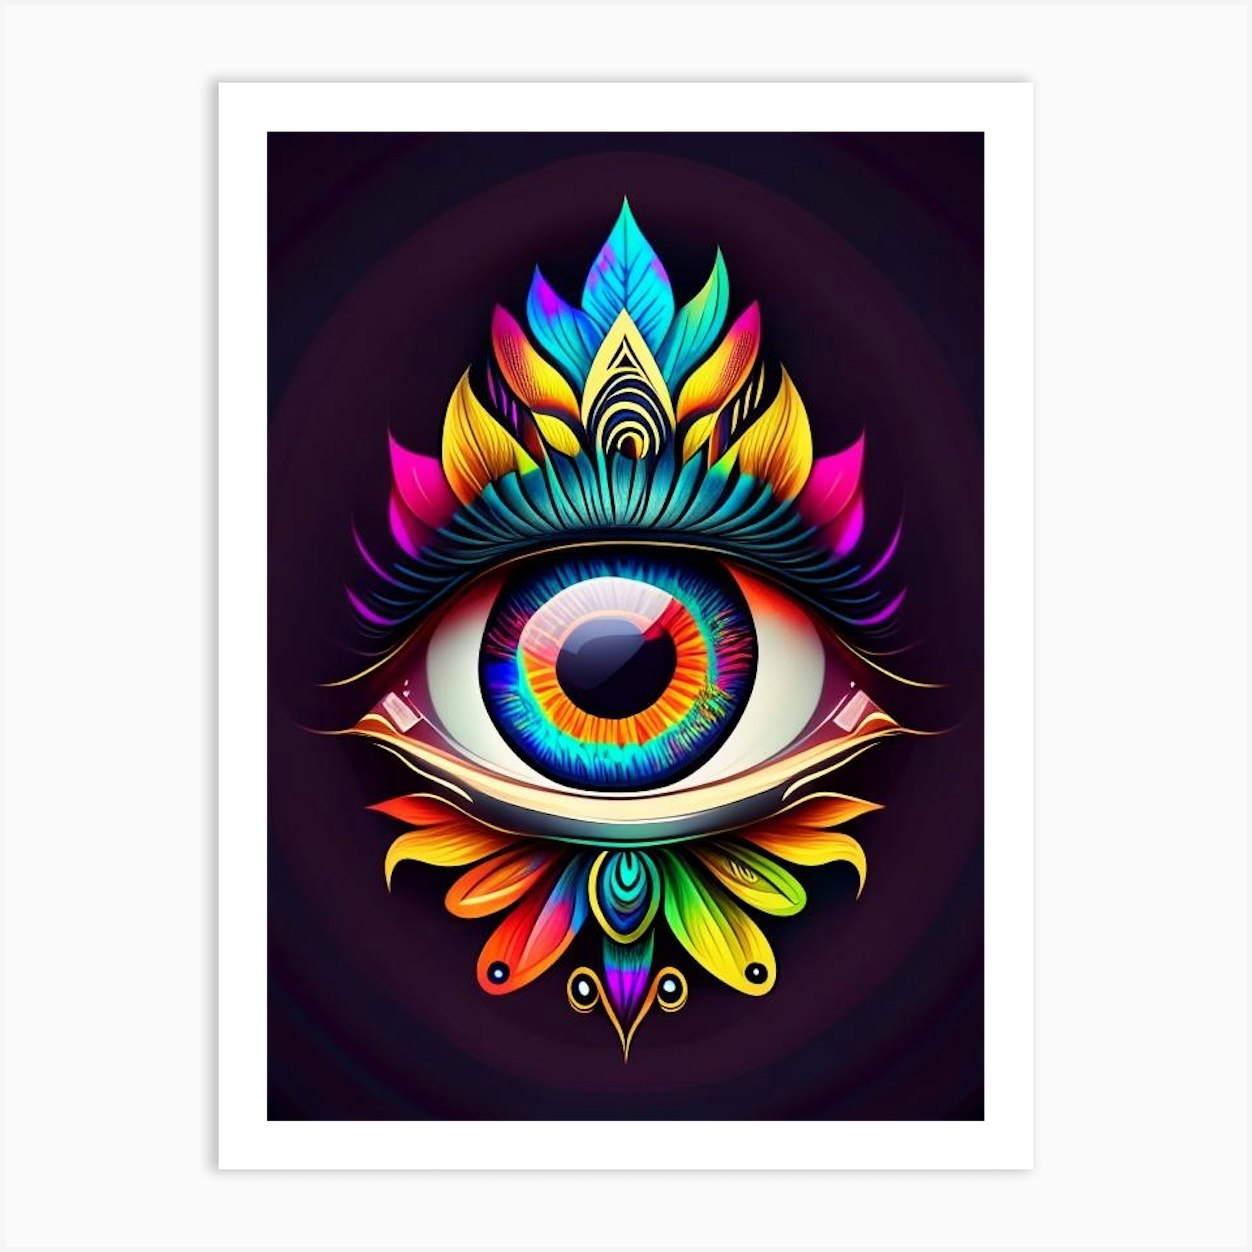 third eye art wallpaper